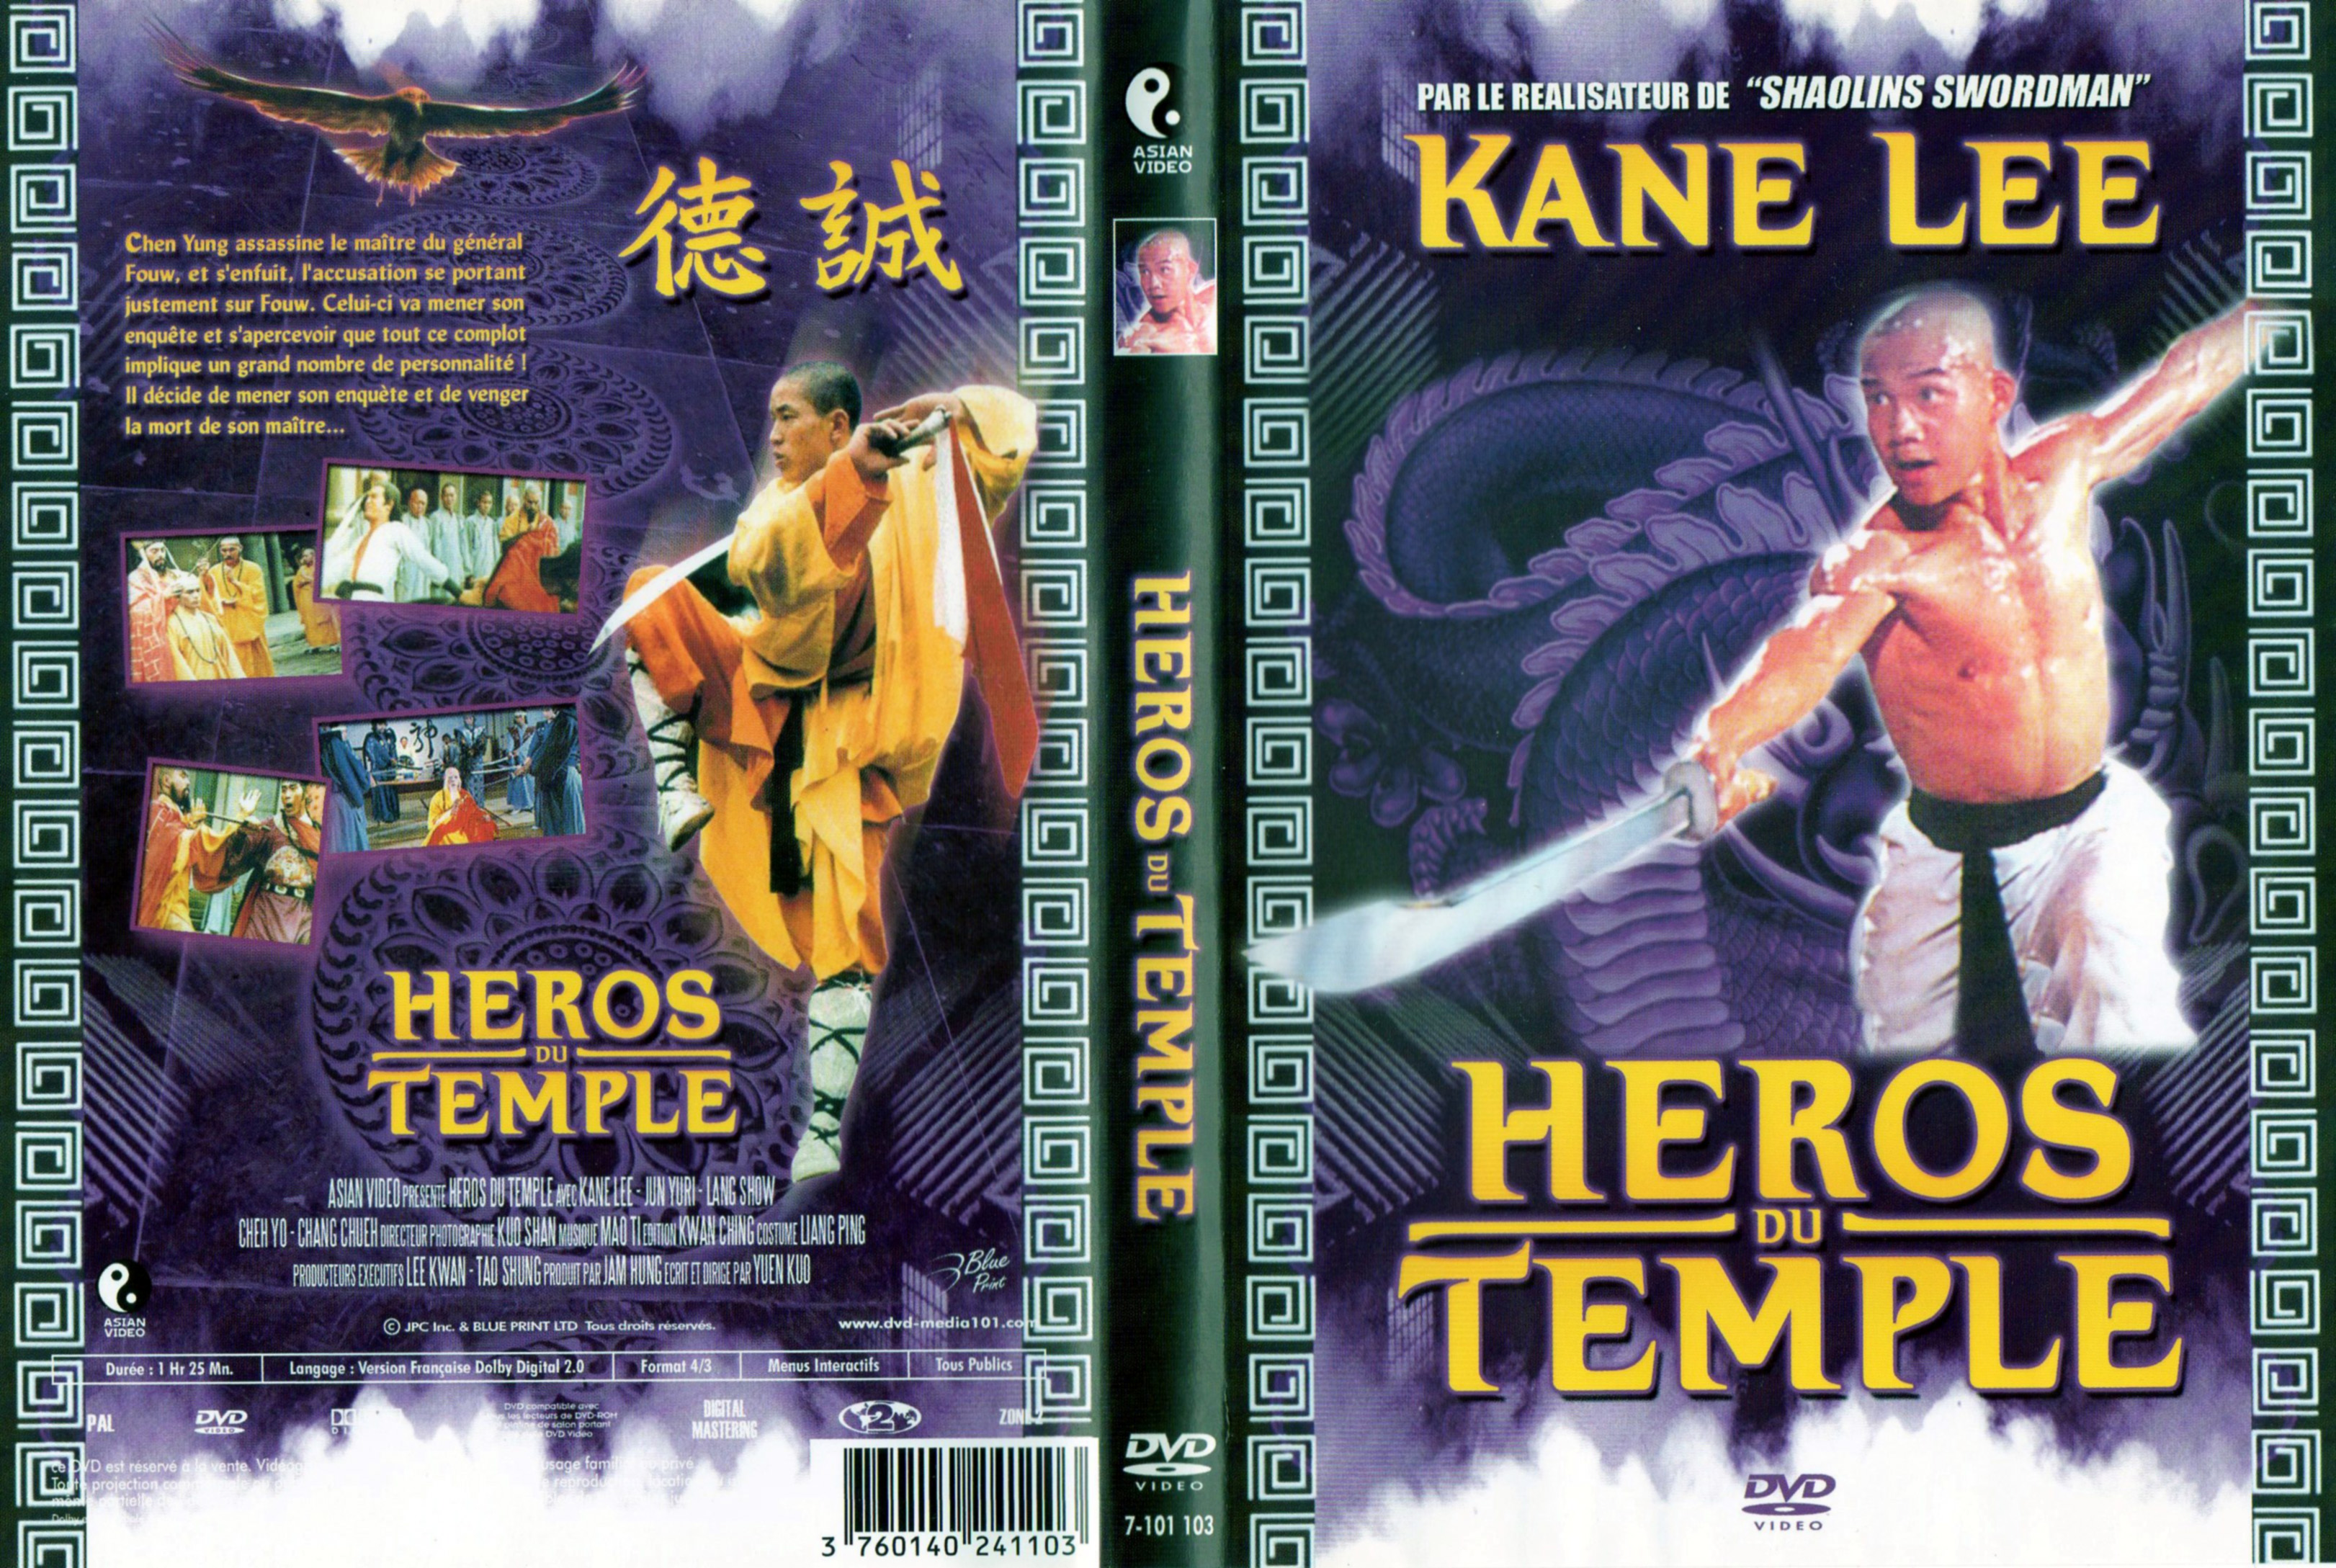 Jaquette DVD Heros du Temple